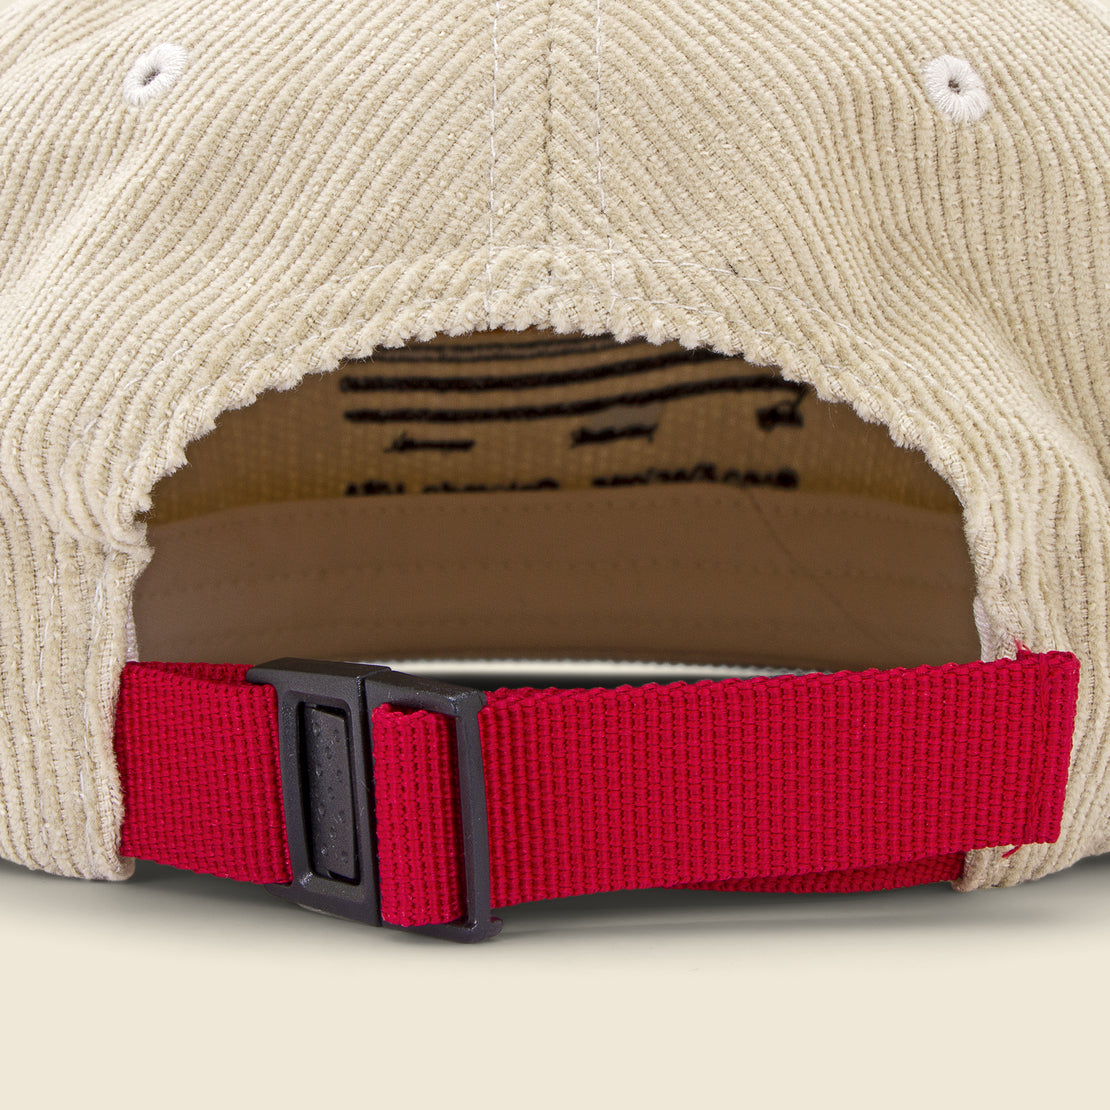 Strata Map Cord Trucker Hat - Tan - Topo Designs - STAG Provisions - Accessories - Hats